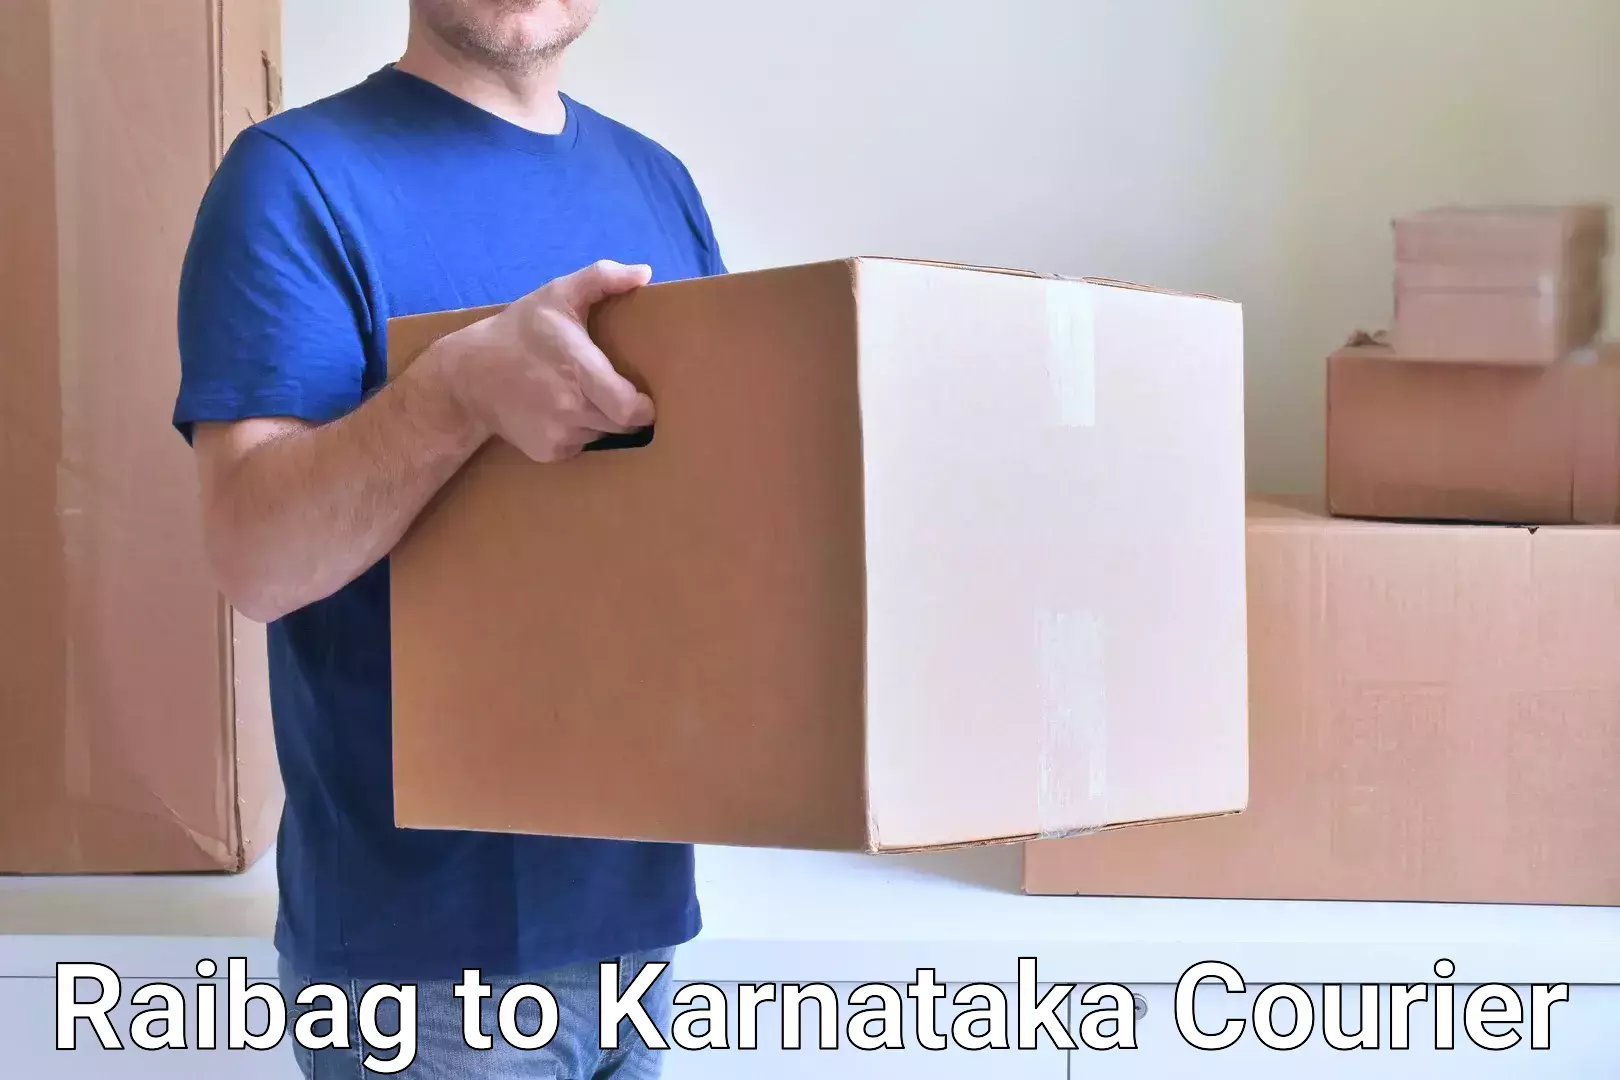 Premium courier services Raibag to Mangalore Port